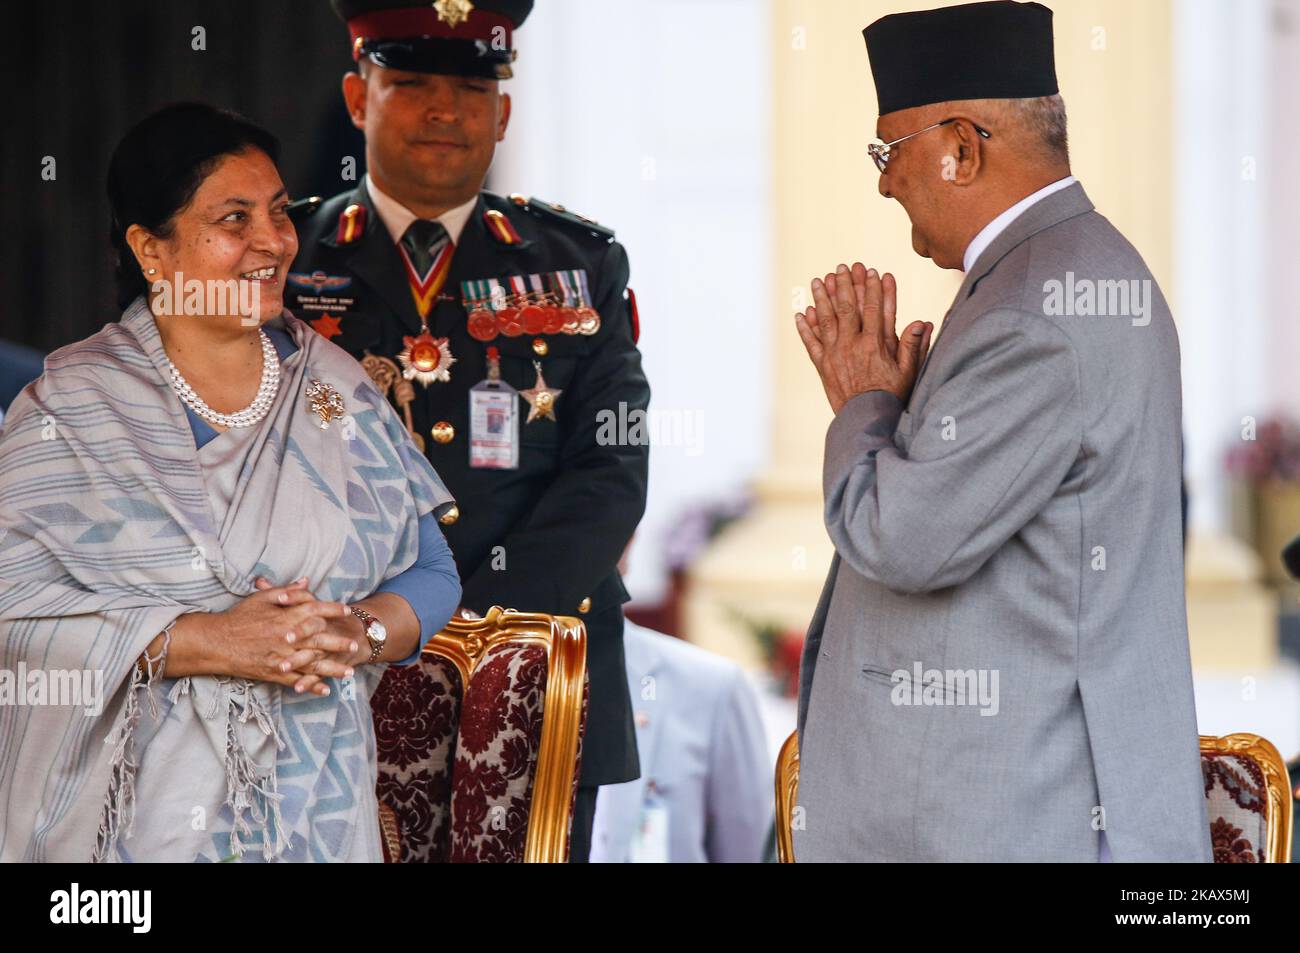 Le président du Népal, Bidhya Devi Bhandari(L), félicite le Premier ministre Khadga Prasad Oli (R) après avoir prêté serment lors de la cérémonie à la résidence du Président à Katmandou, au Népal, au 14 mars 2018. (Photo de Sunil Pradhan/NurPhoto) Banque D'Images